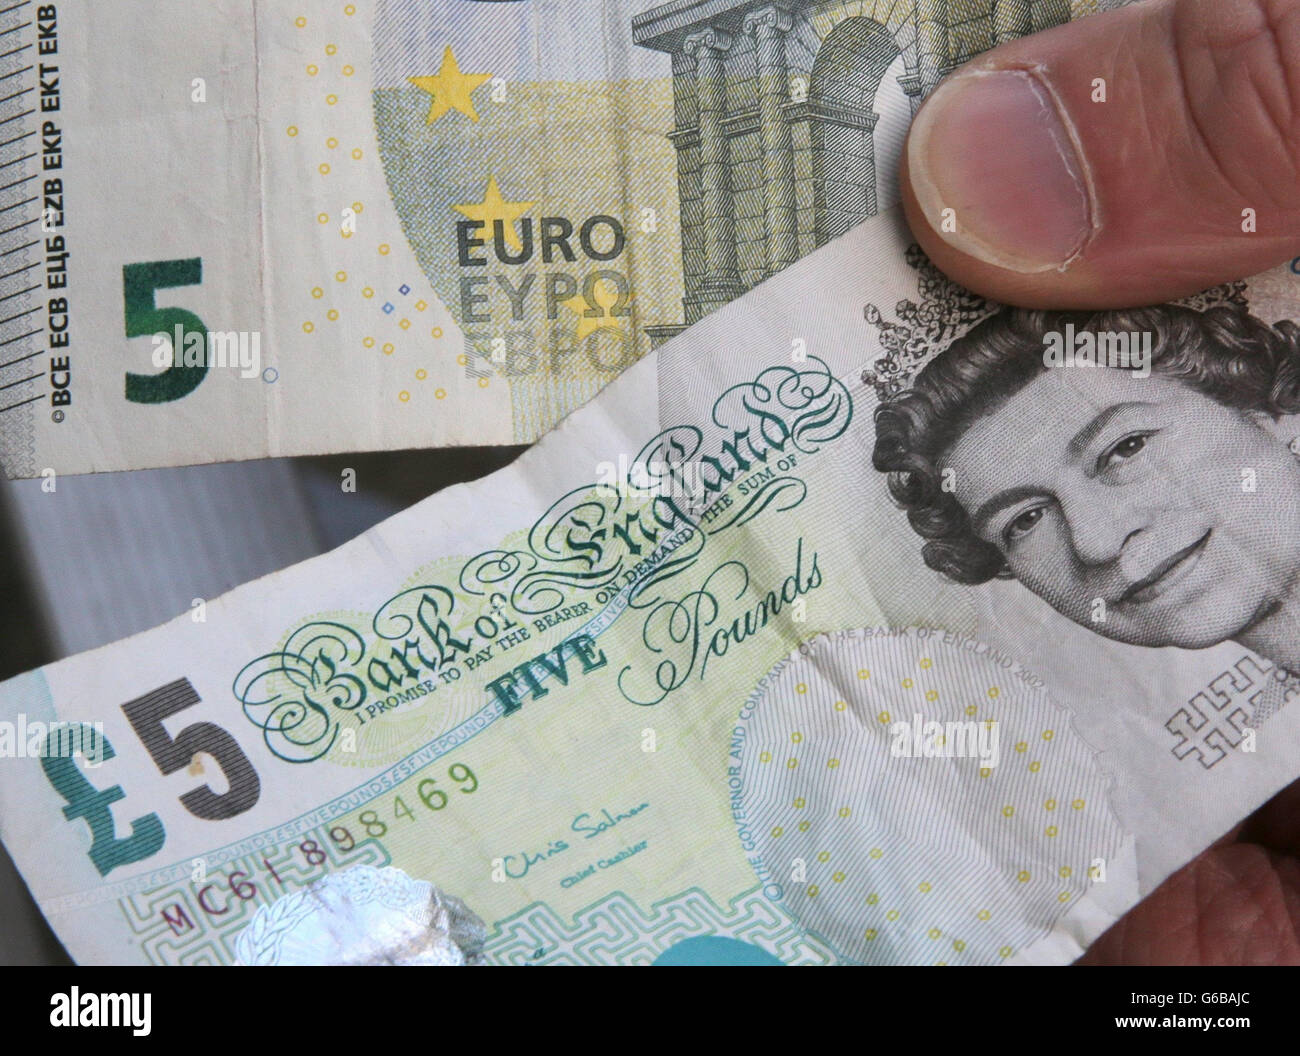 Пластиковые деньги в Англии. Великобританская пятифунтовая банкнота. Фунты в евро. Курс фунта Стерлинга к евро.